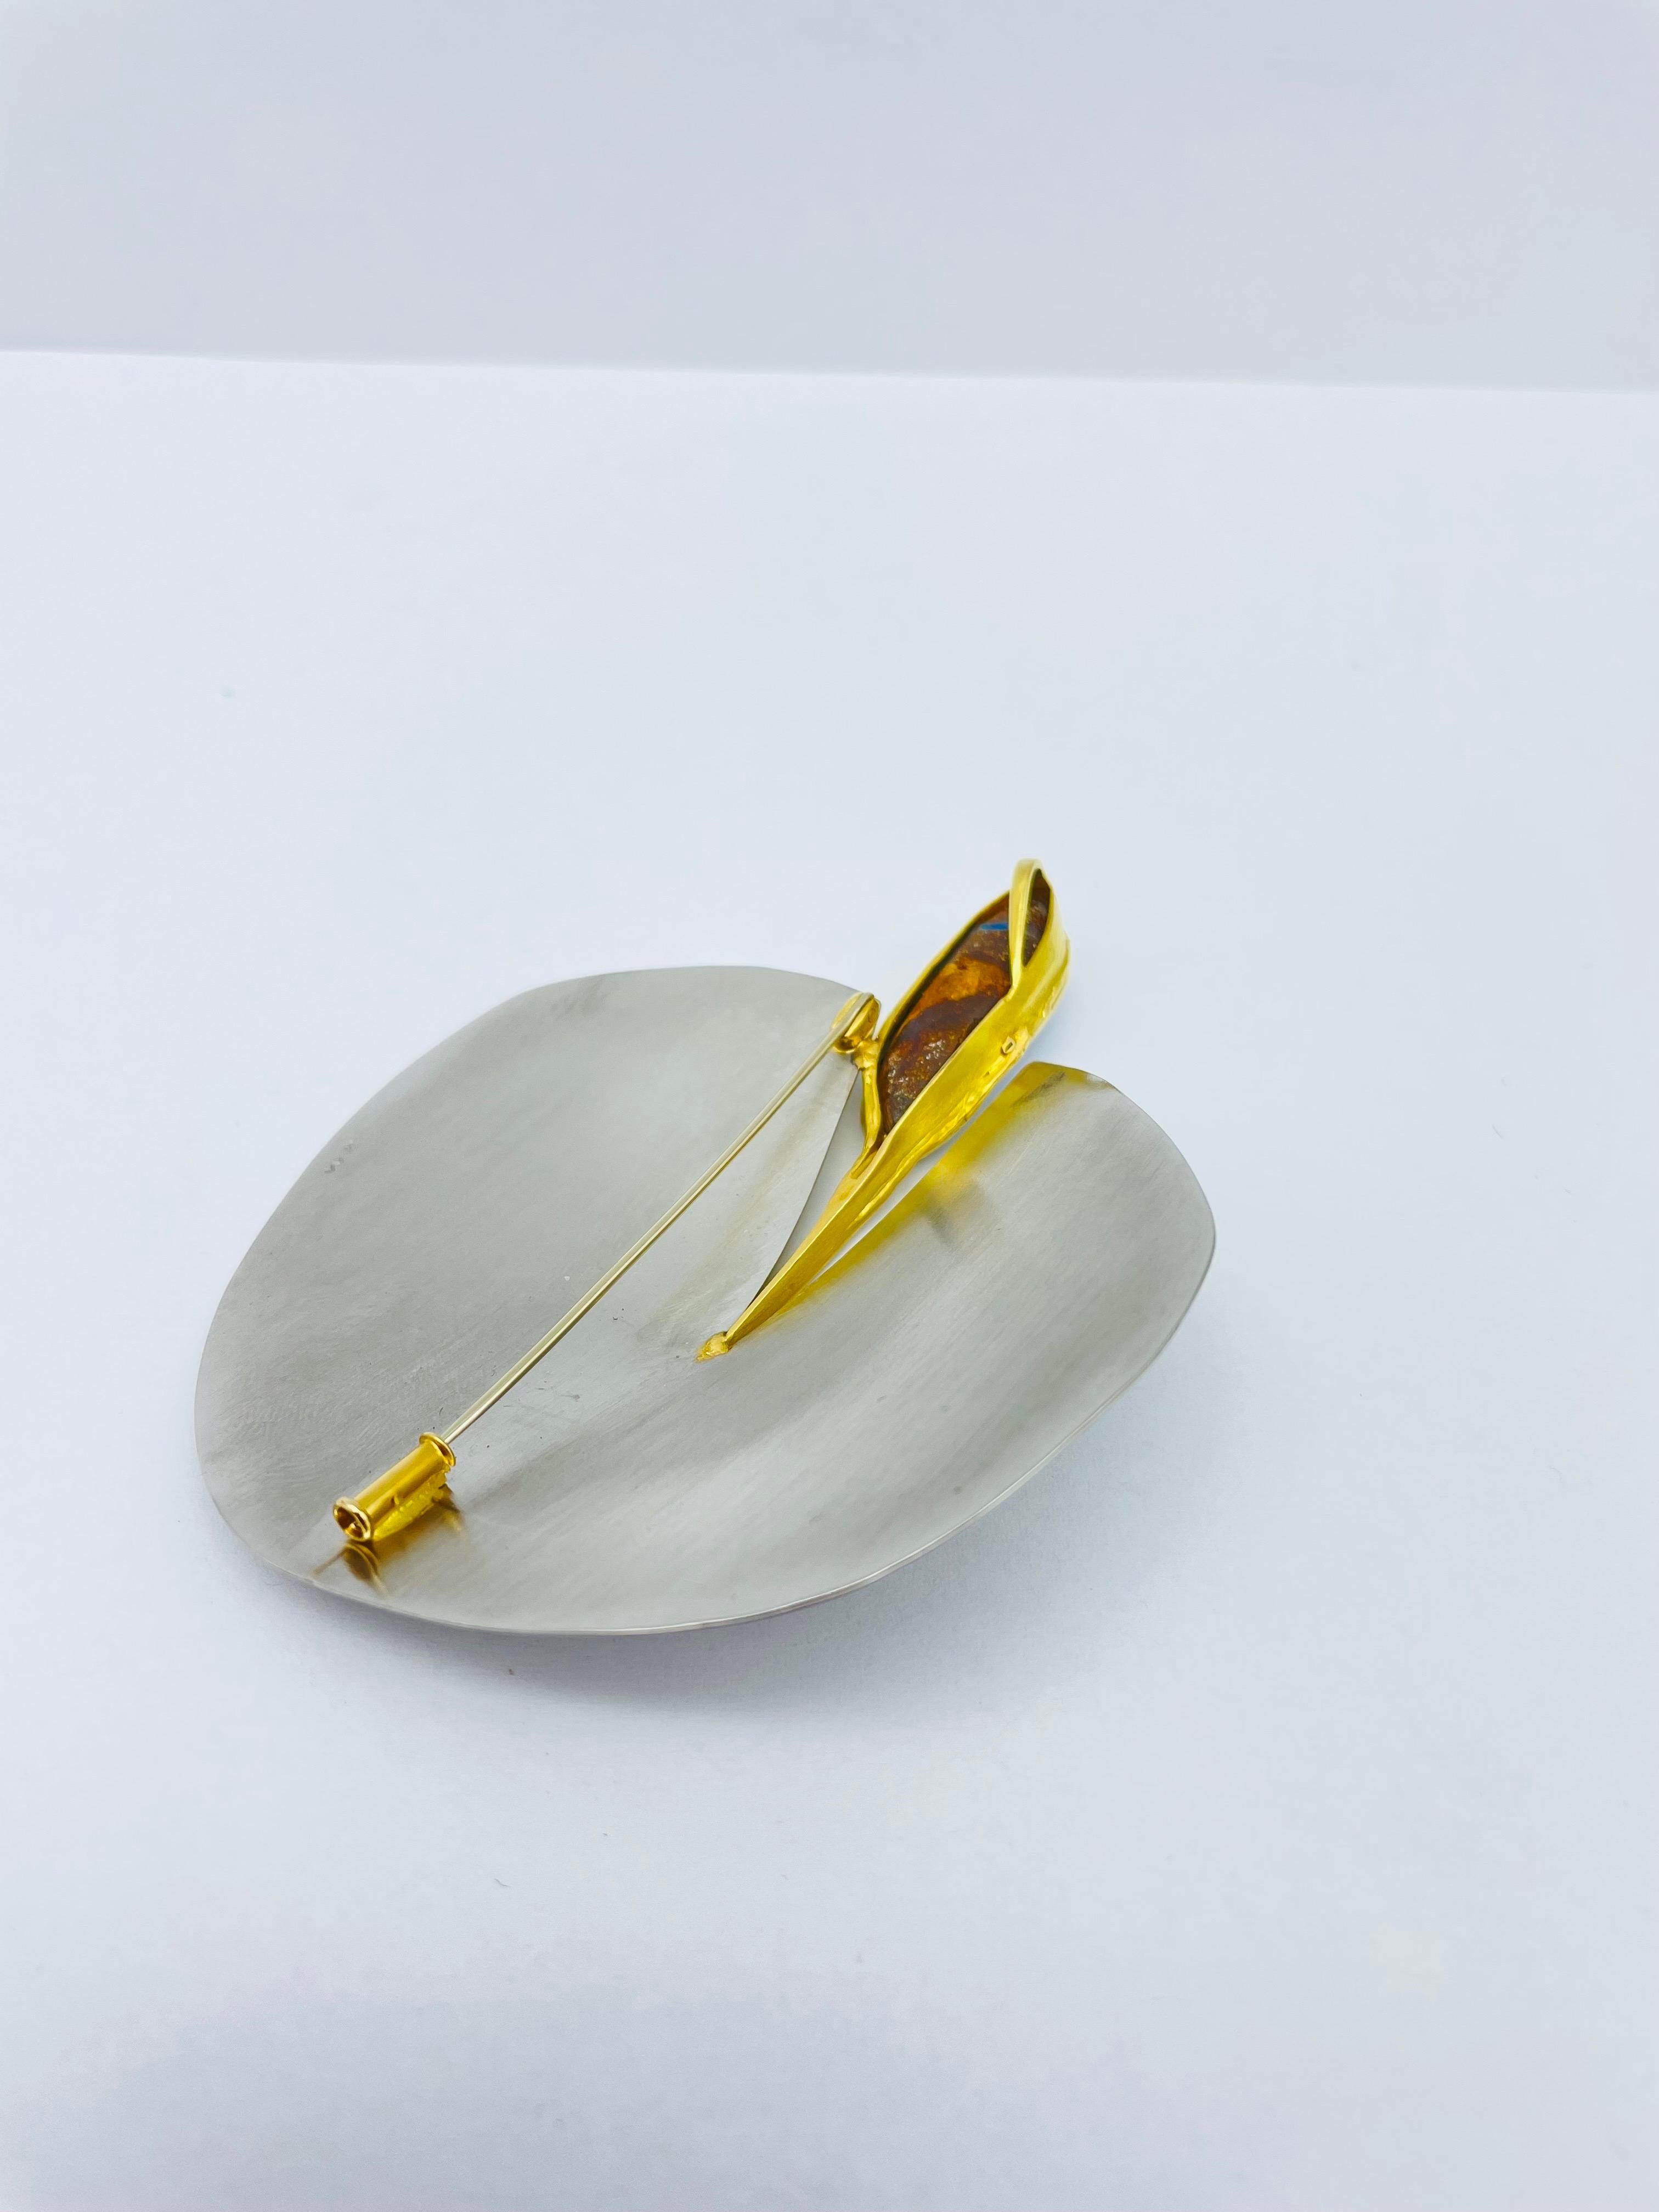 Bicolor Platinum/18k Gold Brooch-Pendant with Australian Opal, Unique For Sale 7